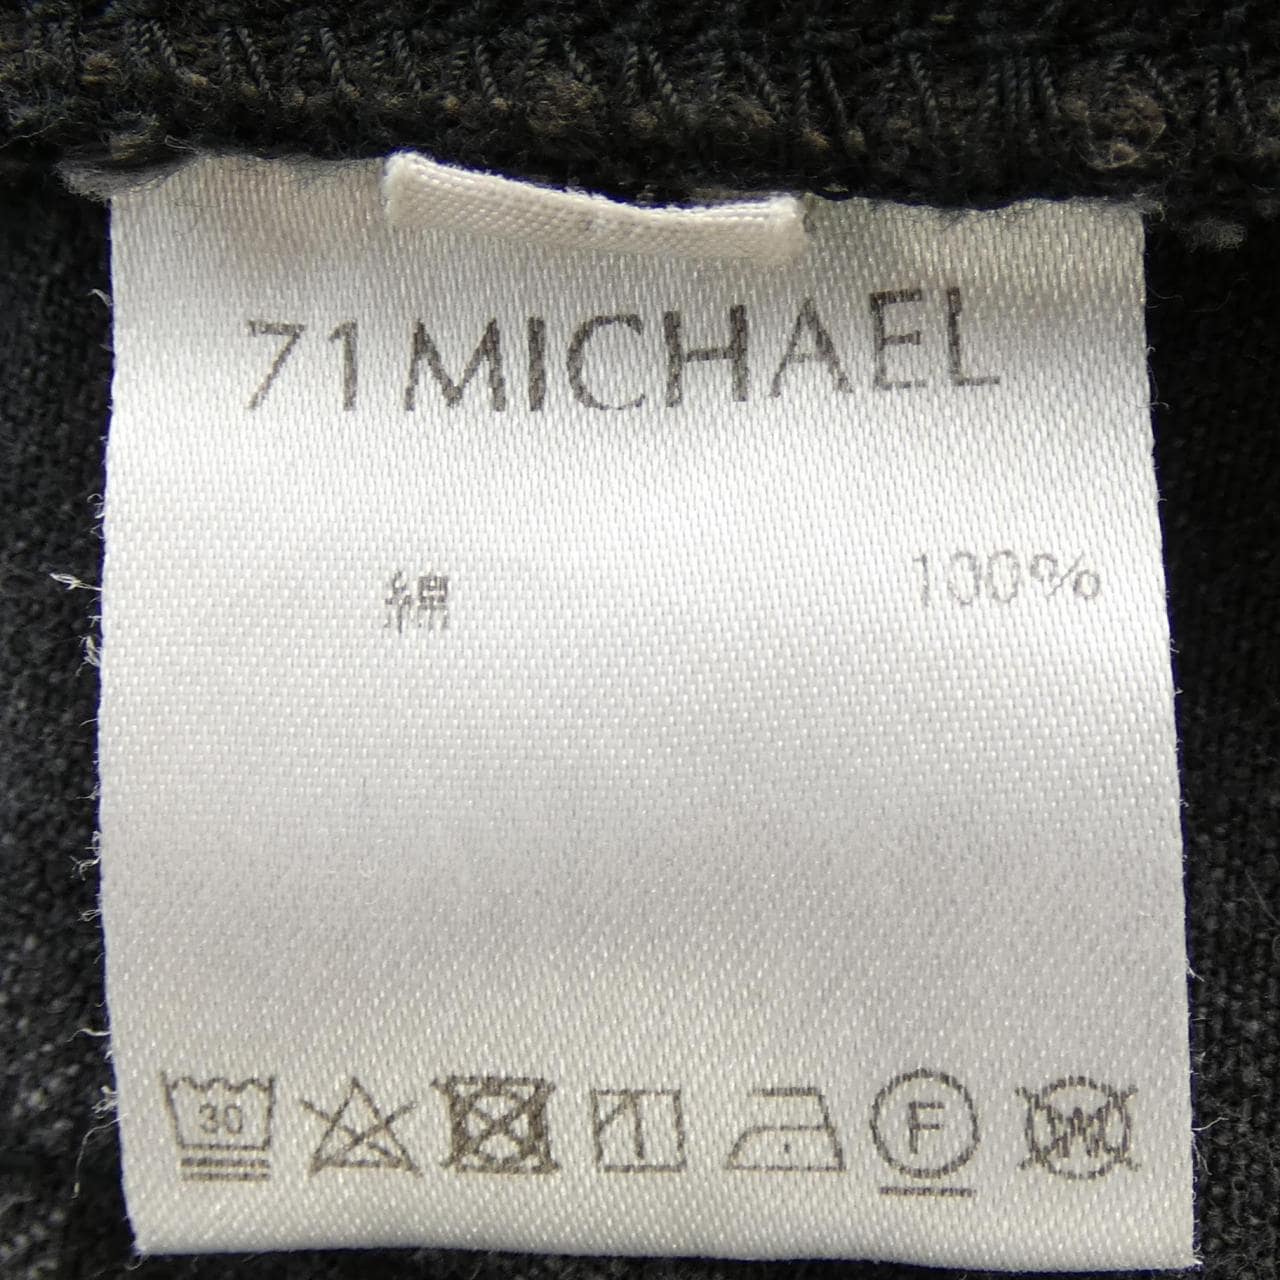 71MICHAEL jeans